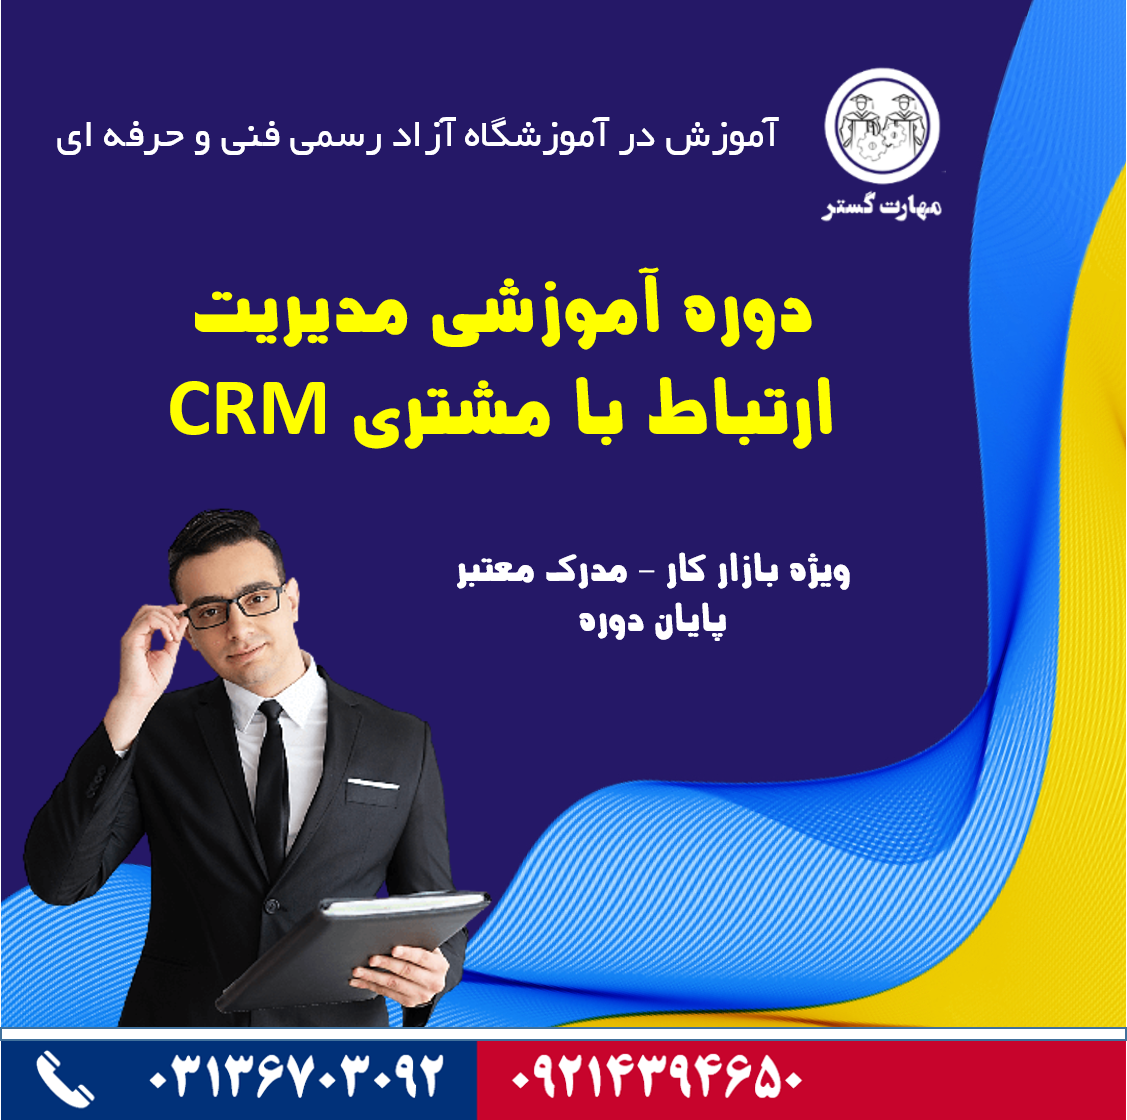 دوره آموزشی مدیریت ارتباط با مشتری CRM در اصفهان